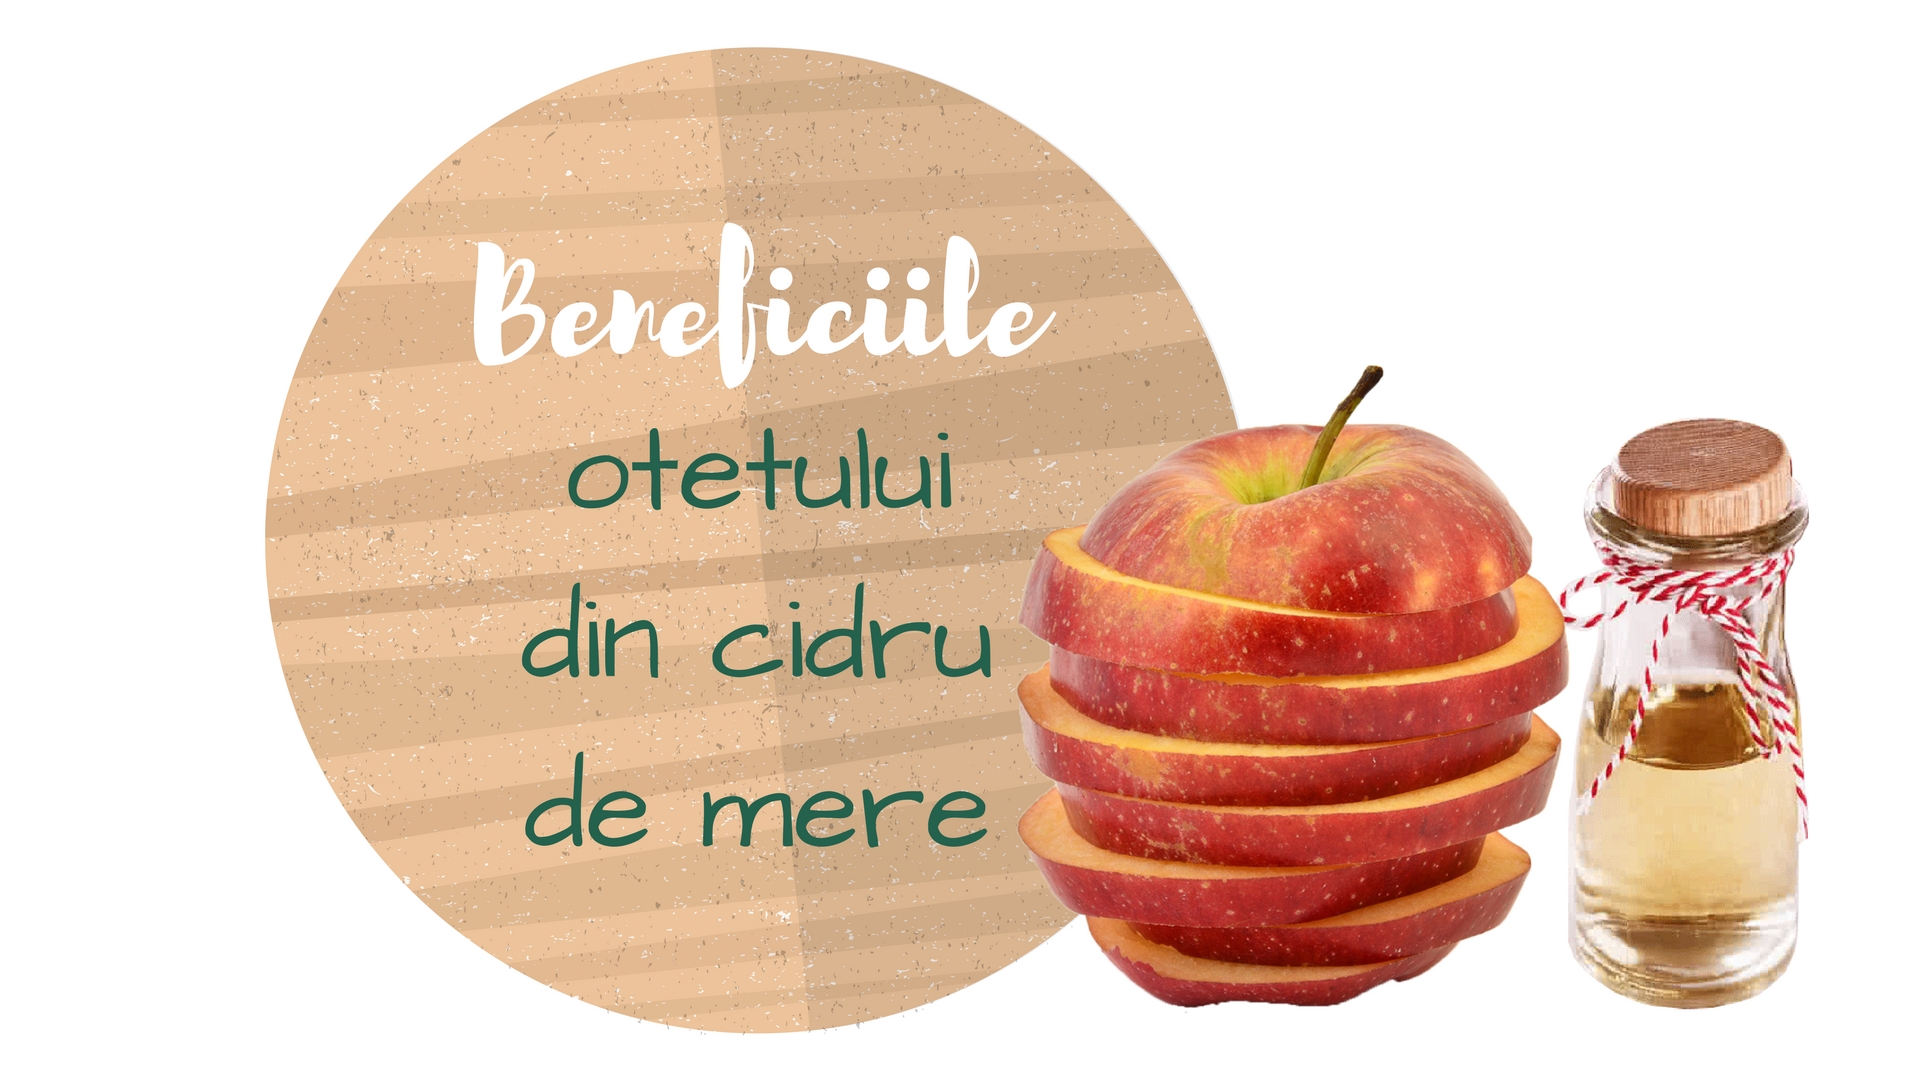 Beneficiile otetului din cidru de mere: Slabire sanatoasa, detoxifiere si grija pentru par, unghii si piele